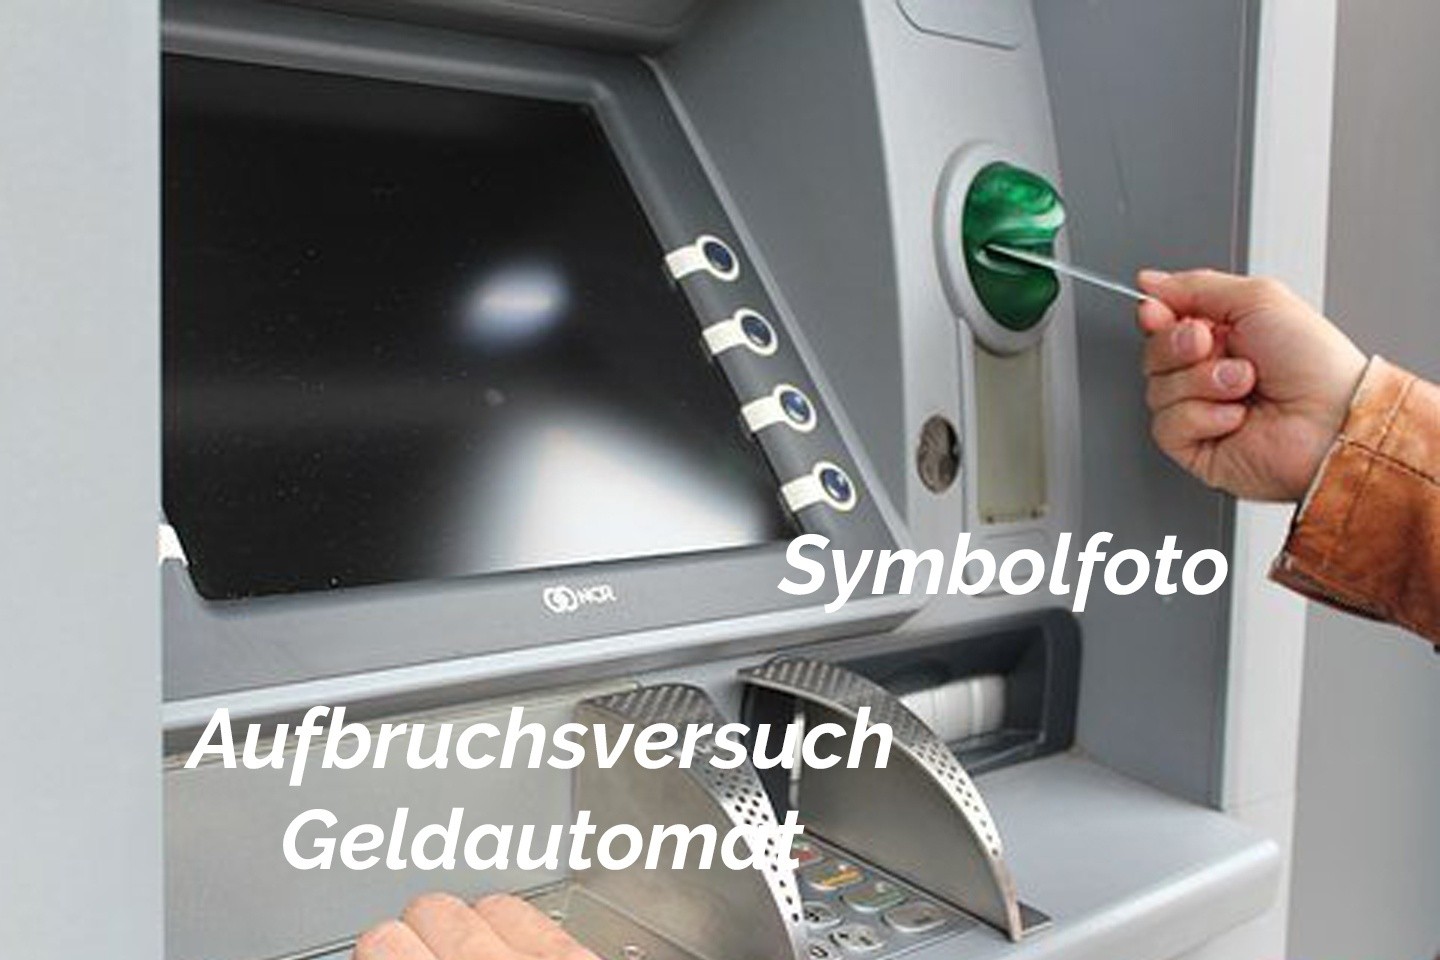 POL-HX: Geldautomat im Visier von Dieben